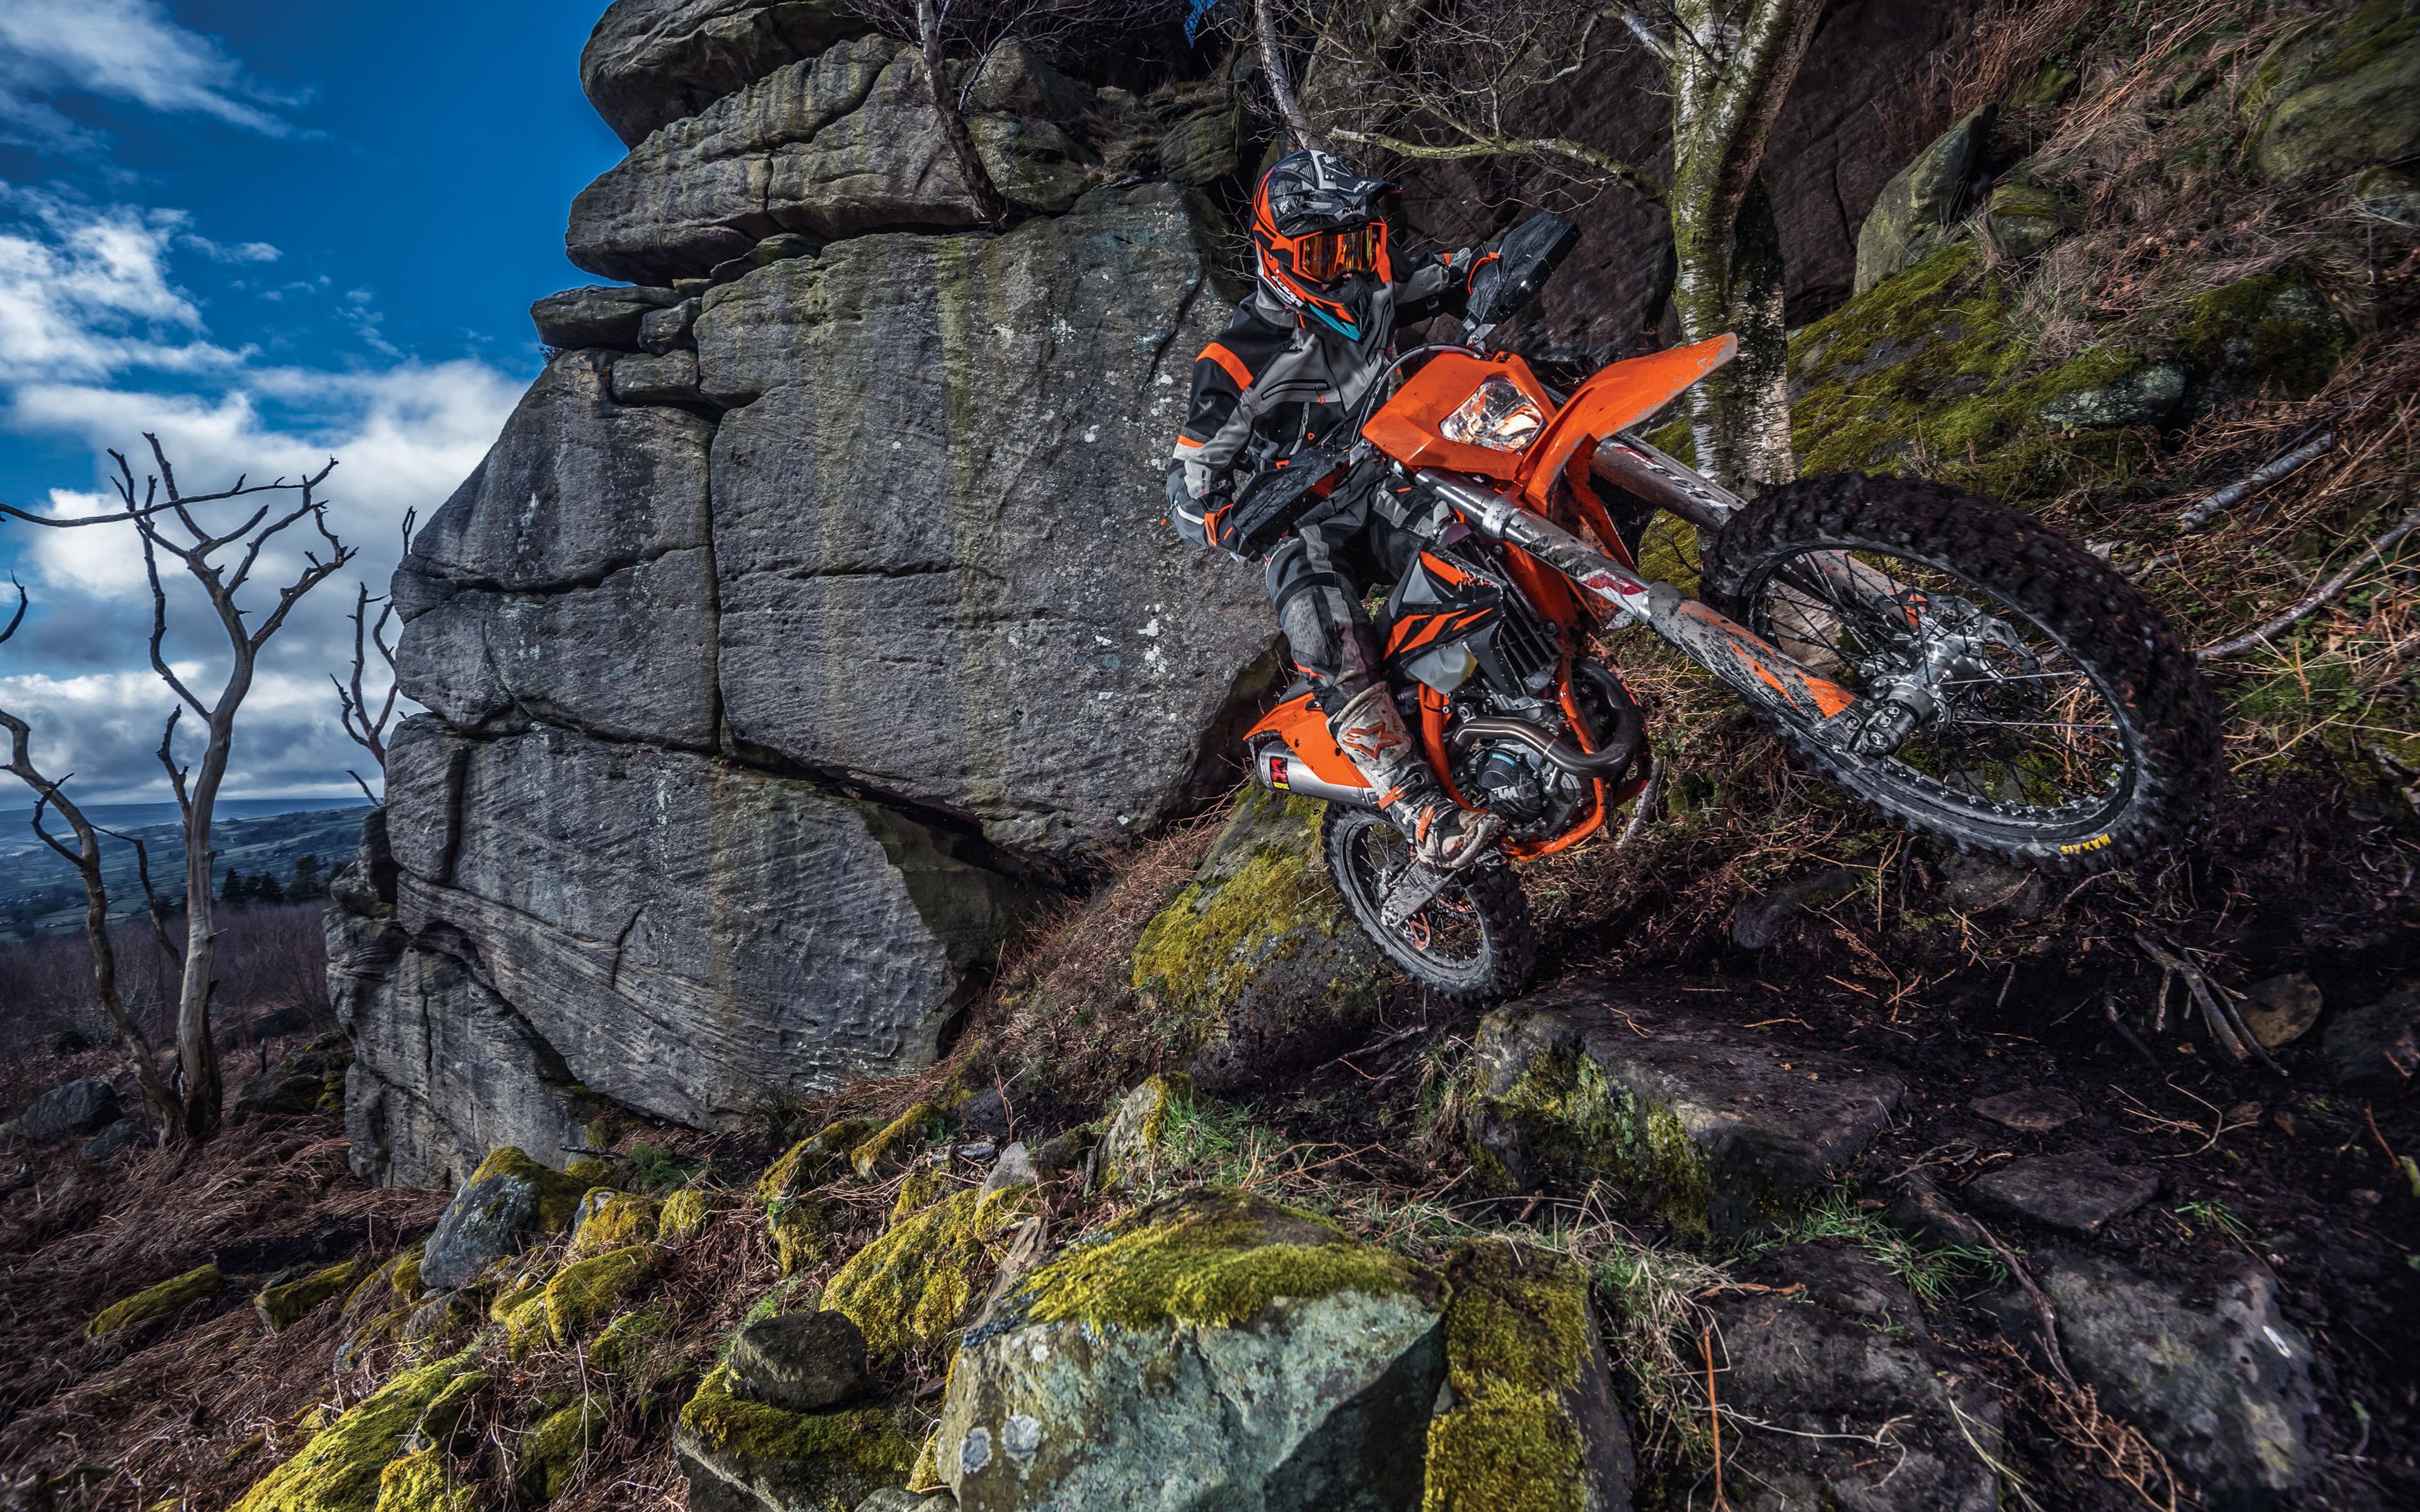 Download Wallpaper KTM 450 EXC F, 4k, Extreme, 2019 Bikes, Cliffs